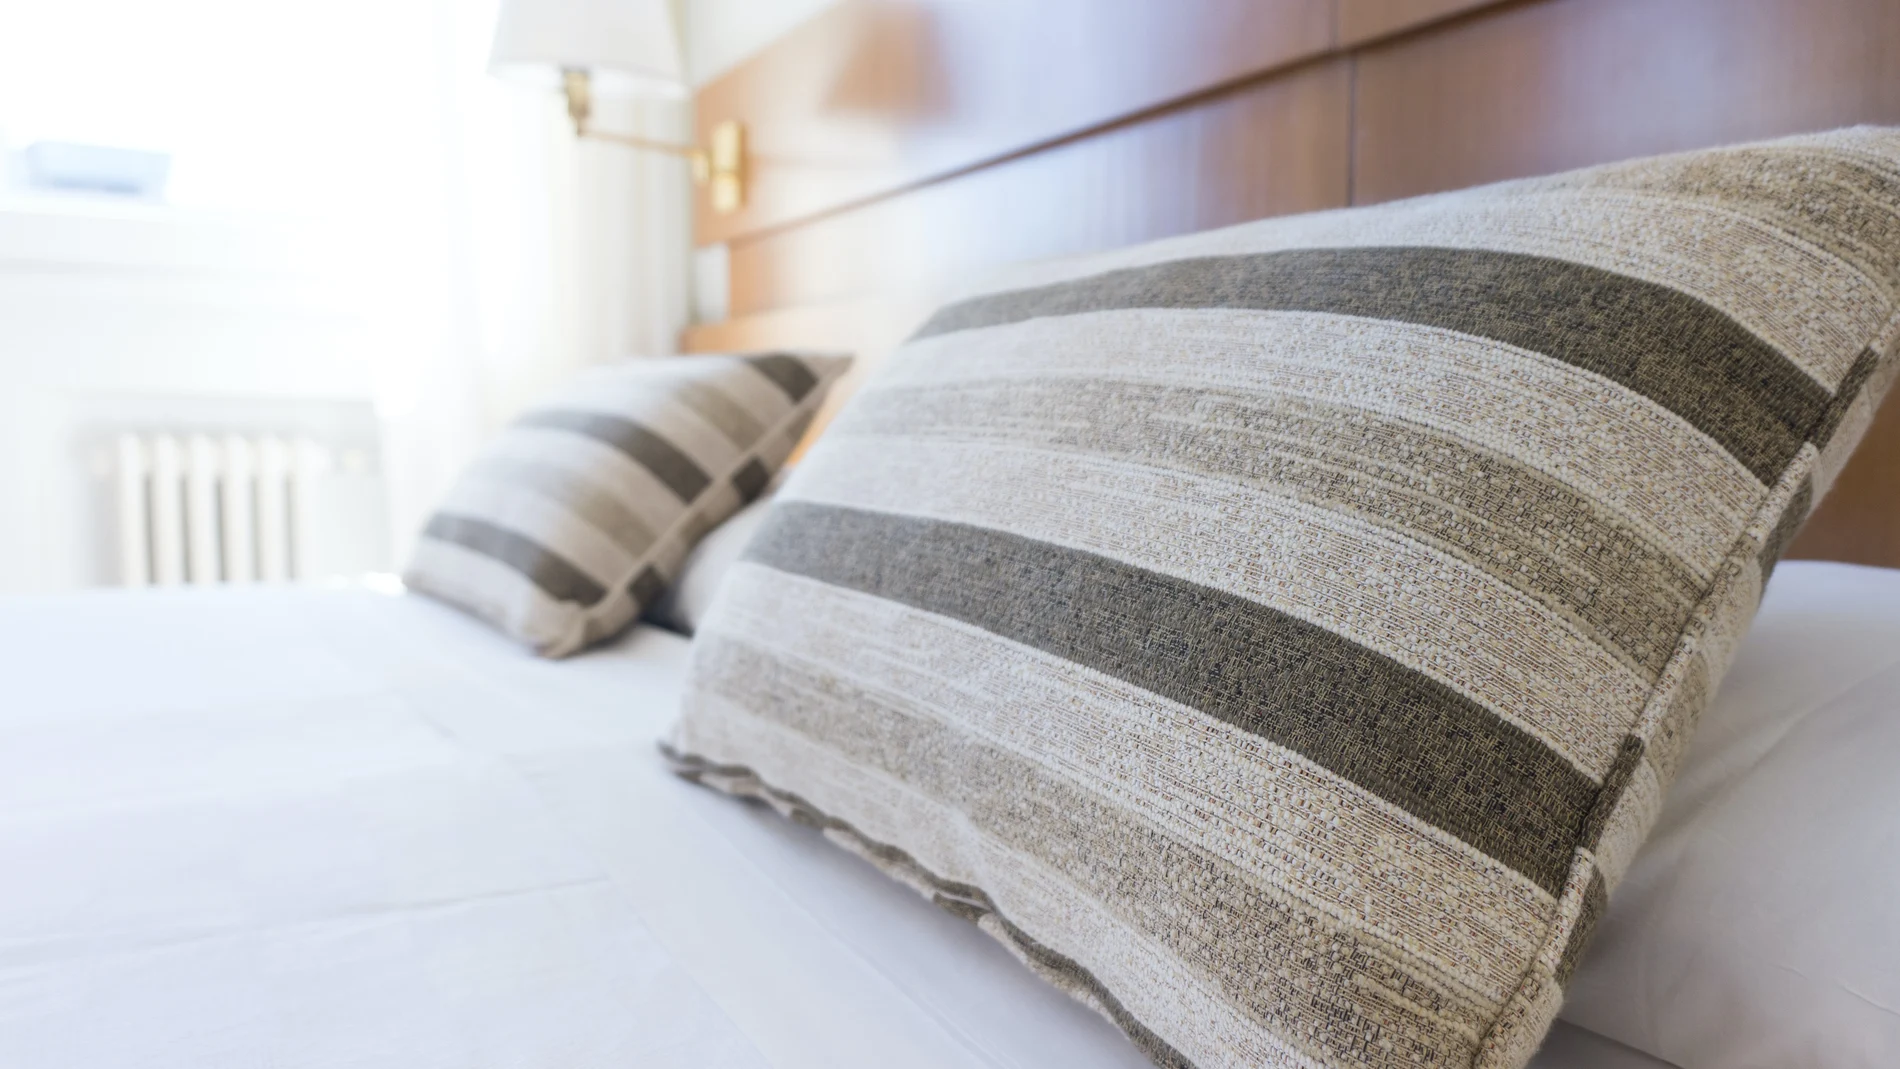 Cómo limpiar un colchón - Información útil y práctica sobre colchones